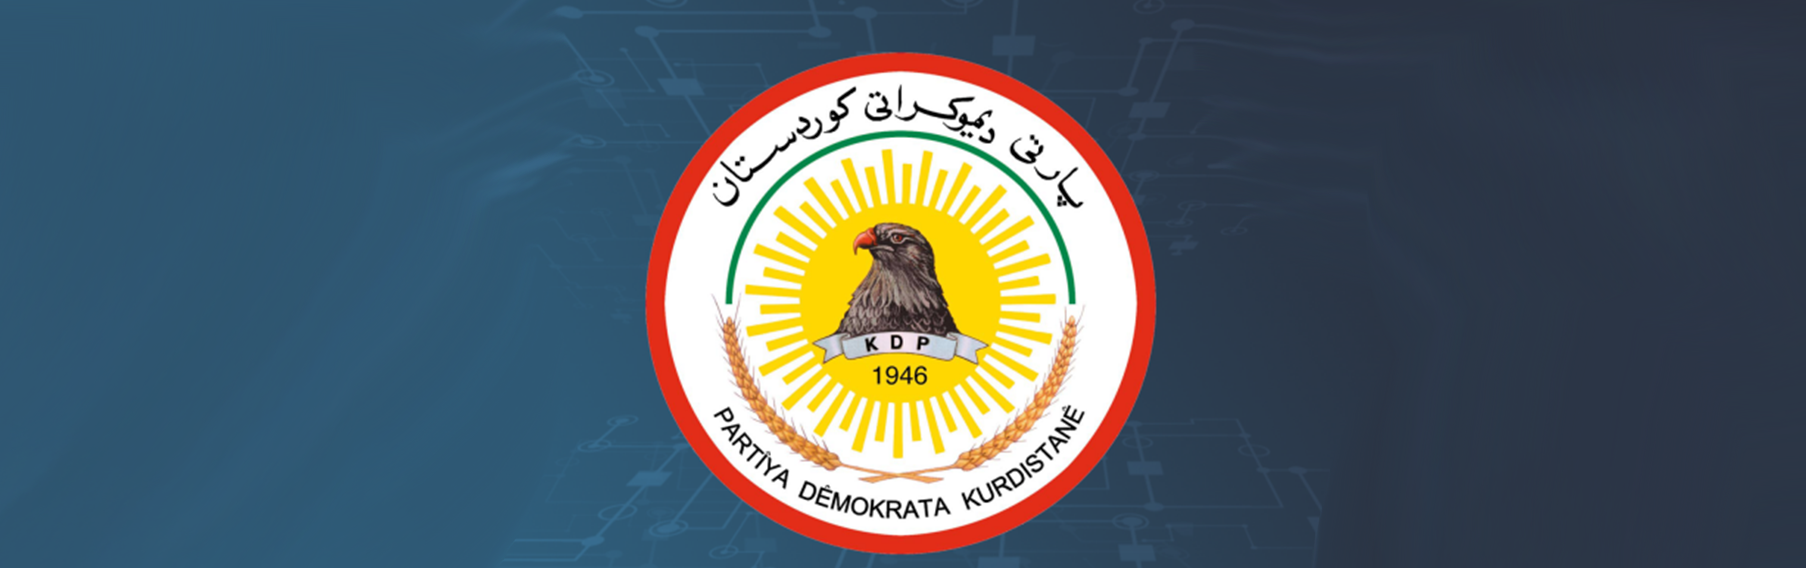 الديمقراطي الكردستاني يعلن التوصل لمراحل متقدمة لحسم تسمية المرشح لرئاسة الجمهورية